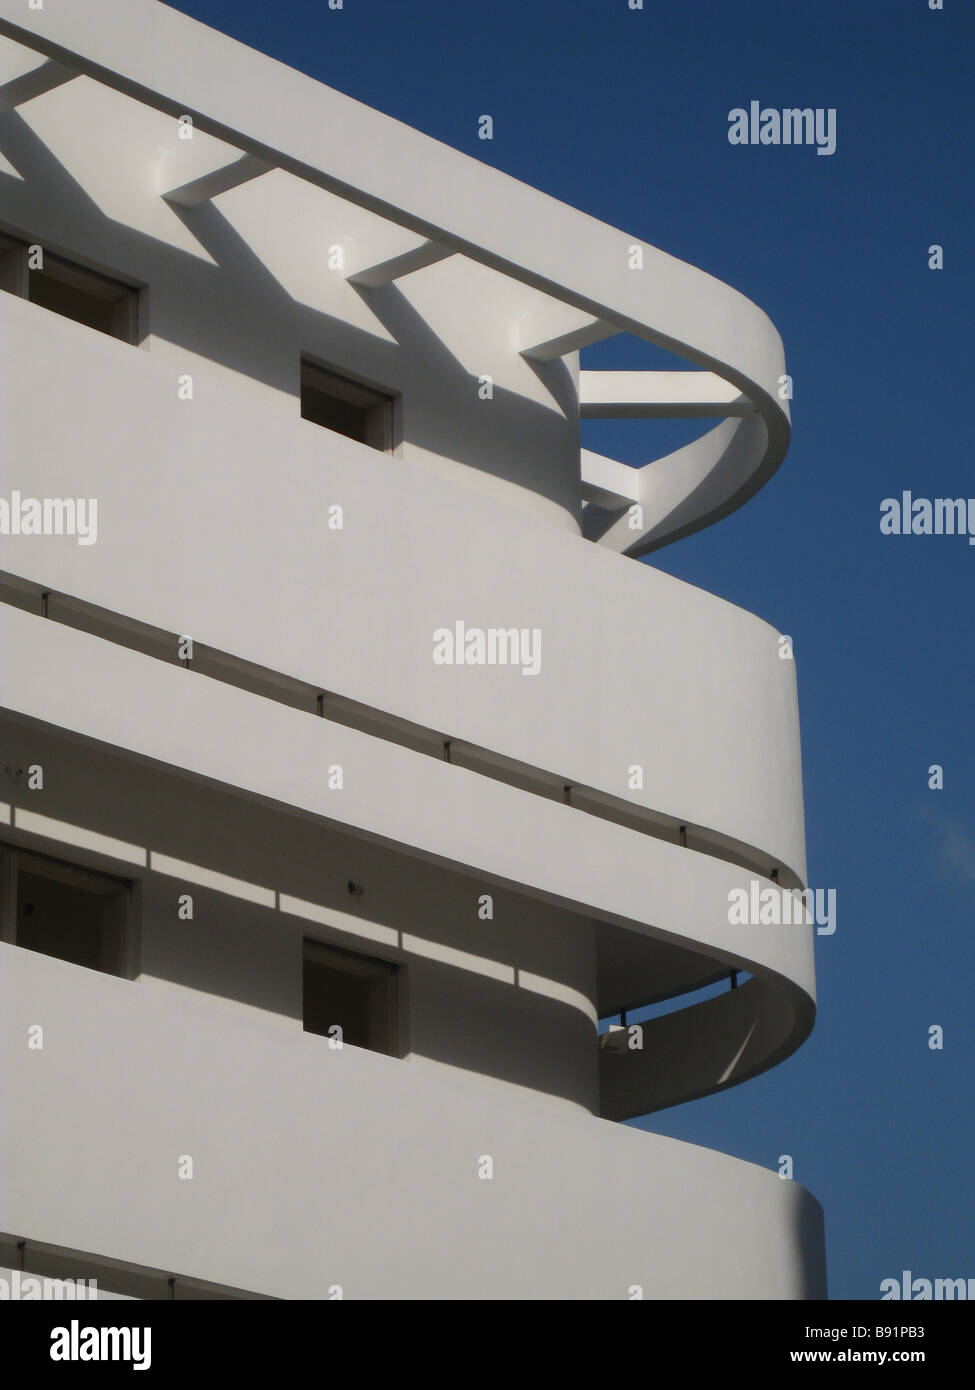 Rationaliser et balcon en saillie d'un béton incurvé de l'ombre d'un vieux bâtiment construit dans le style d'architecture Bauhaus dans les années 1930, à Tel Aviv, Israël Banque D'Images